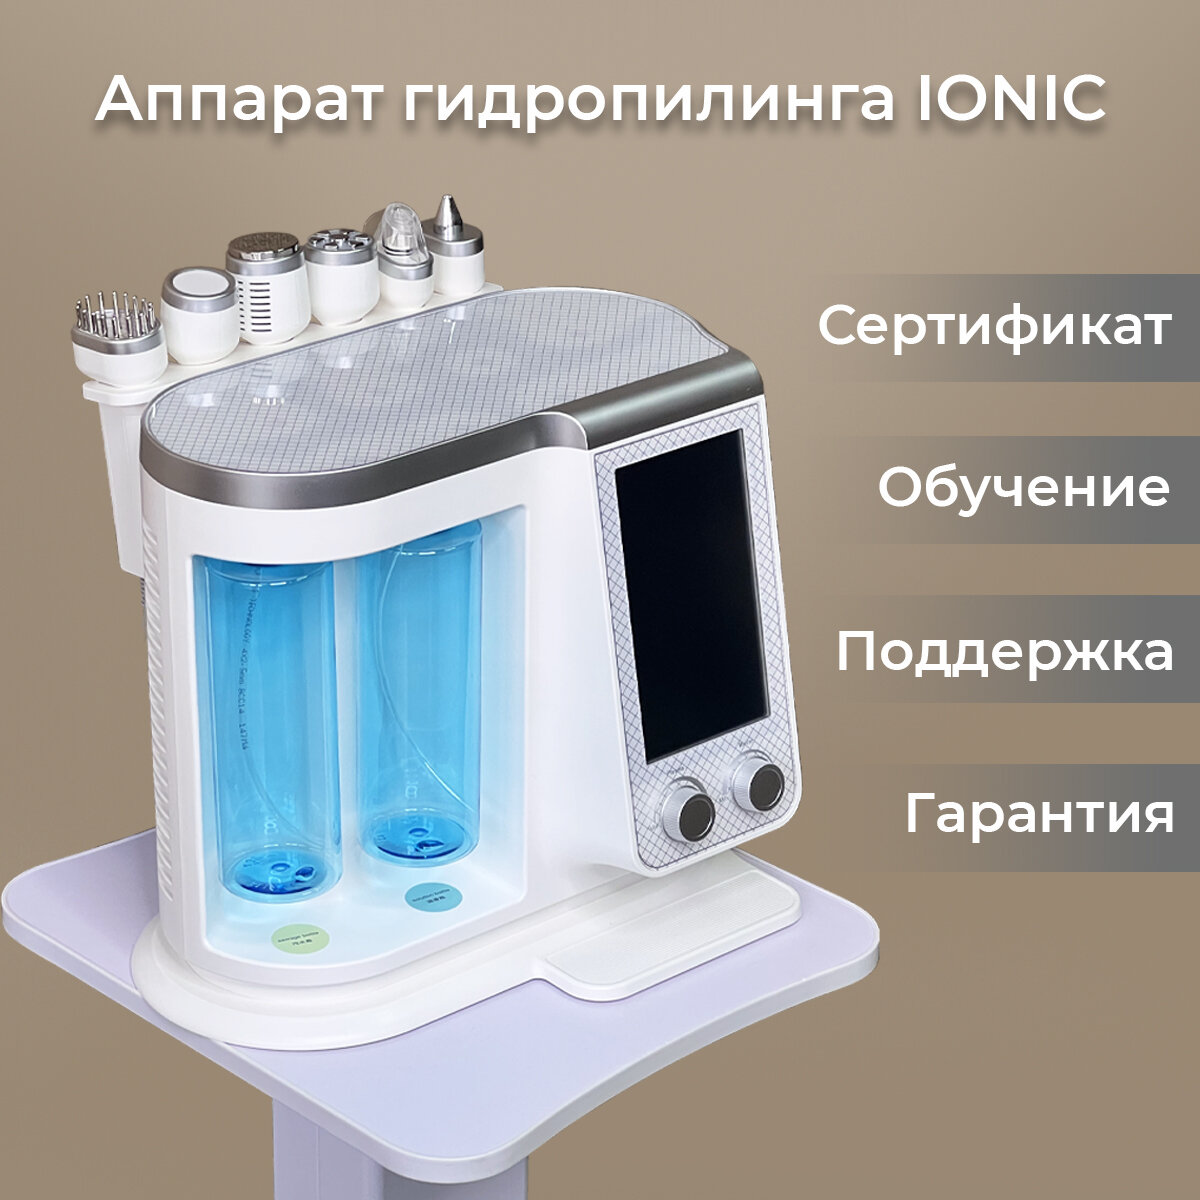 Аппарат гидропилинга IONIC (6 в 1)